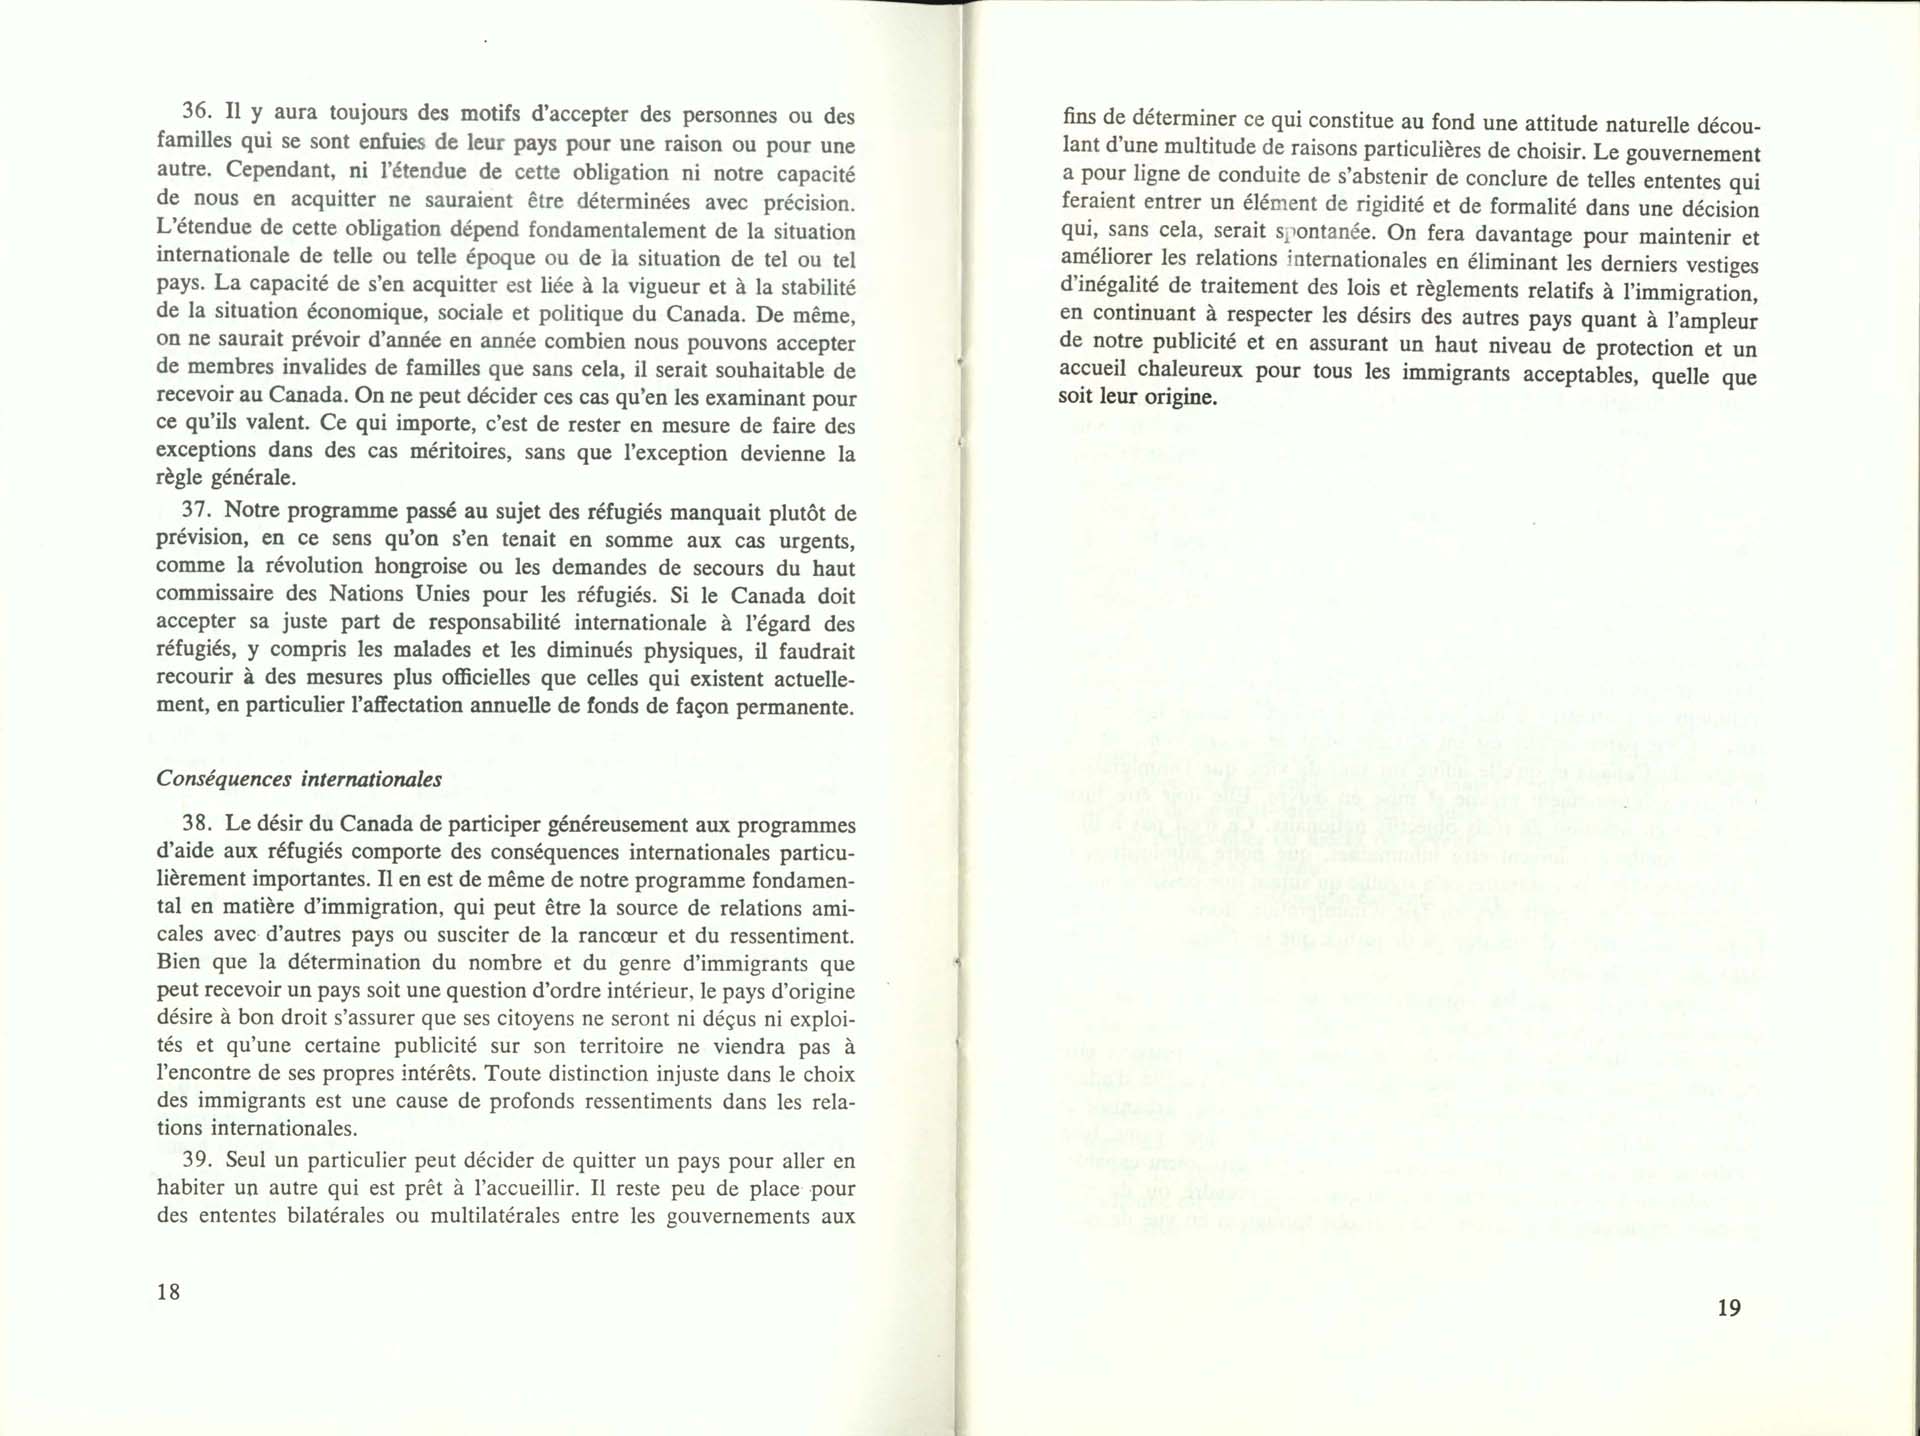 Page 18, 19 Livre Blanc sur l’immigration, 1966